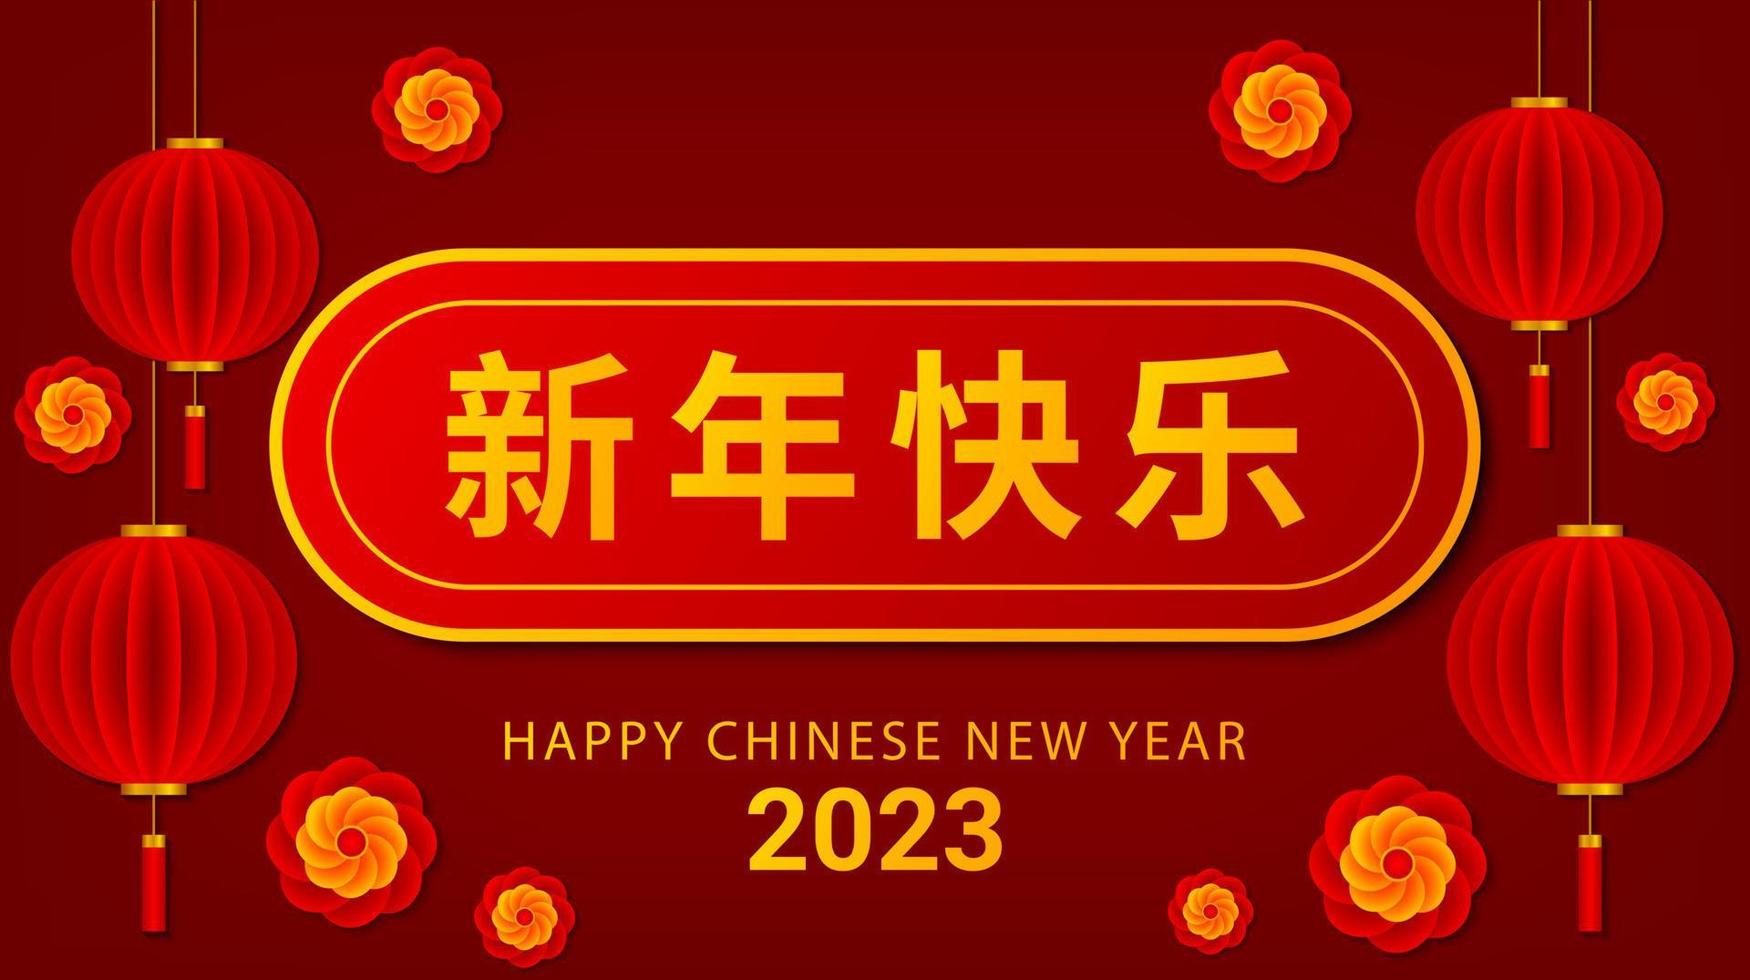 ano novo chinês 2023, ano do coelho. design de cartão com lanternas e decoração de flores sobre fundo vermelho. ilustração vetorial tradicional chinesa vetor